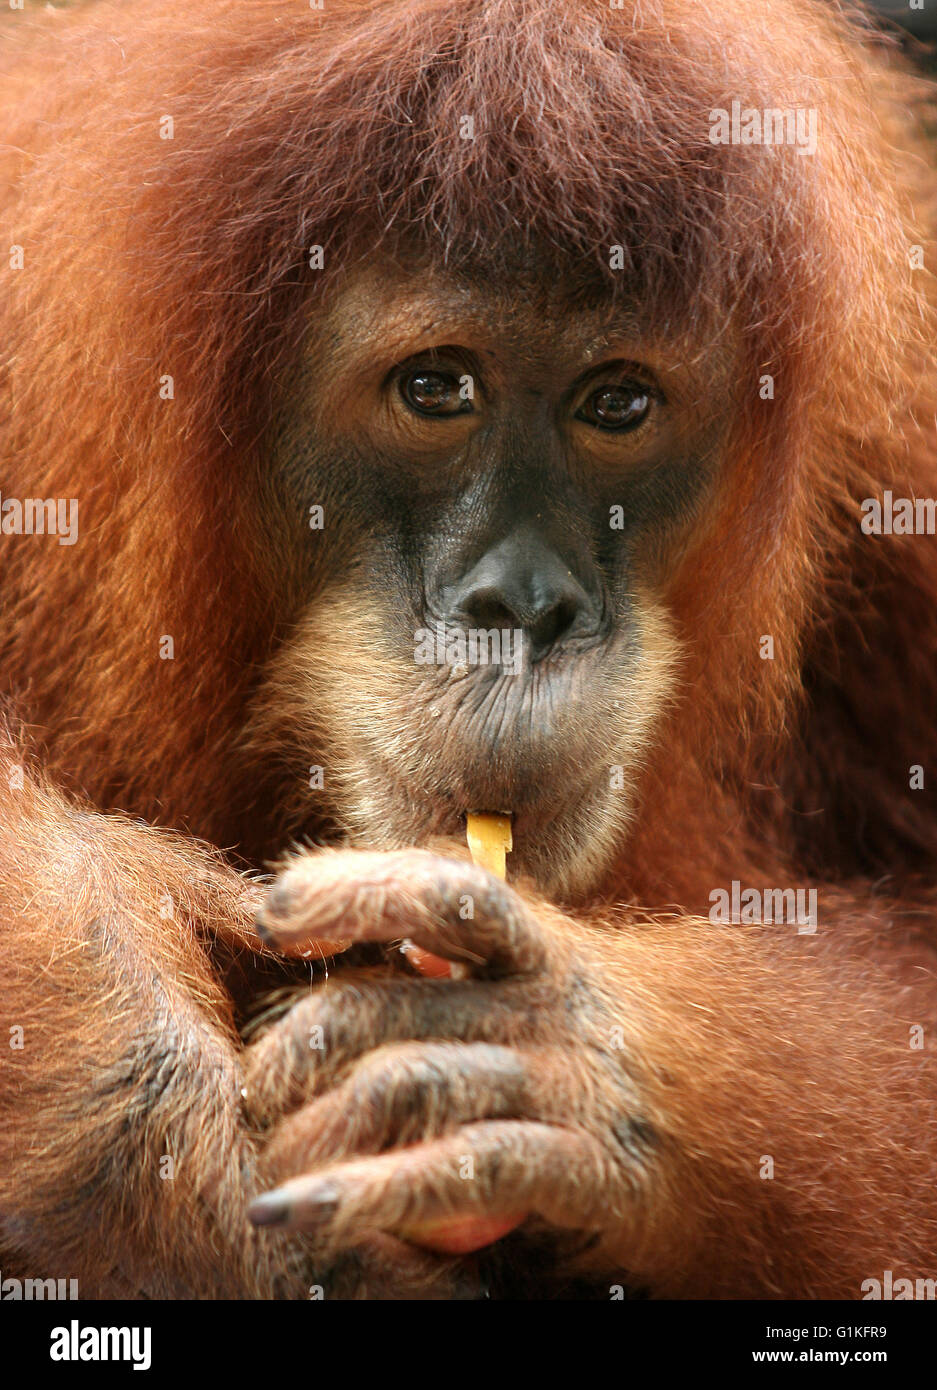 Monkey orangutan Stock Photo